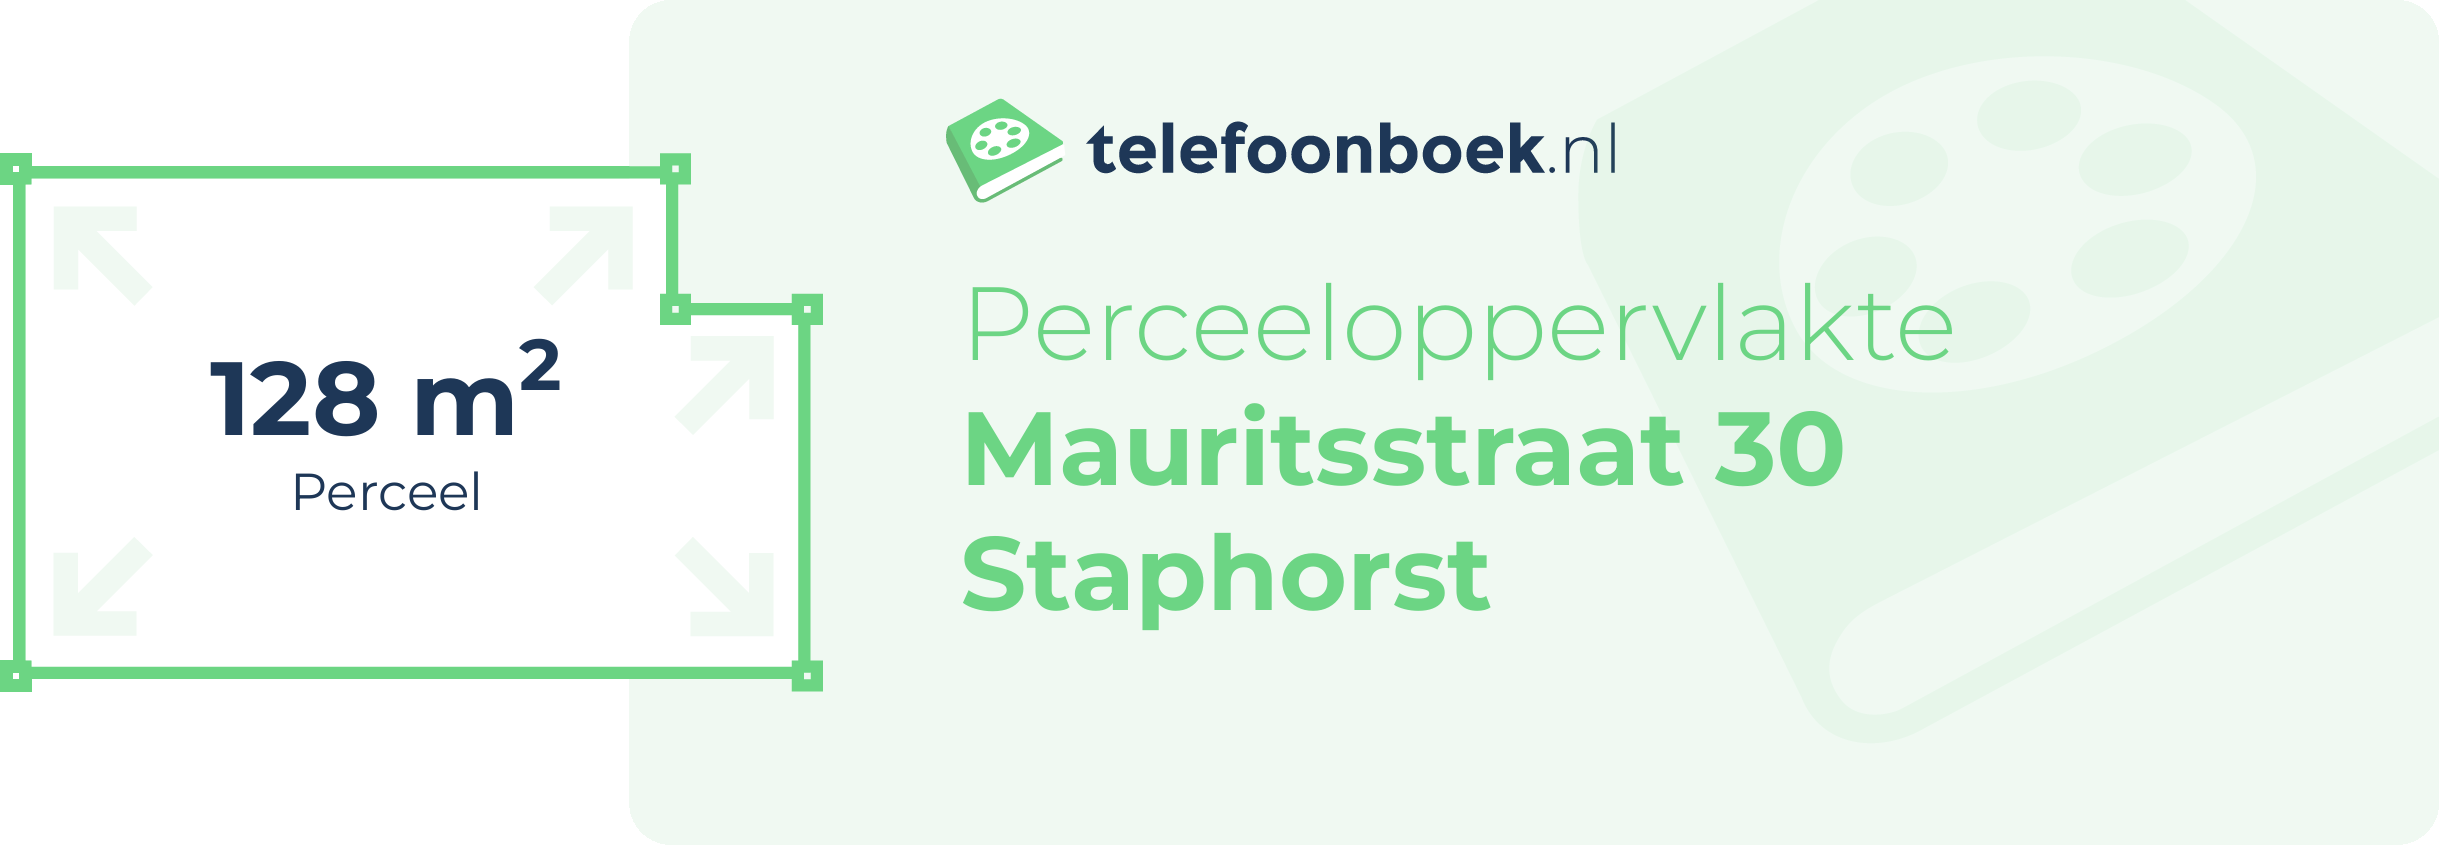 Perceeloppervlakte Mauritsstraat 30 Staphorst